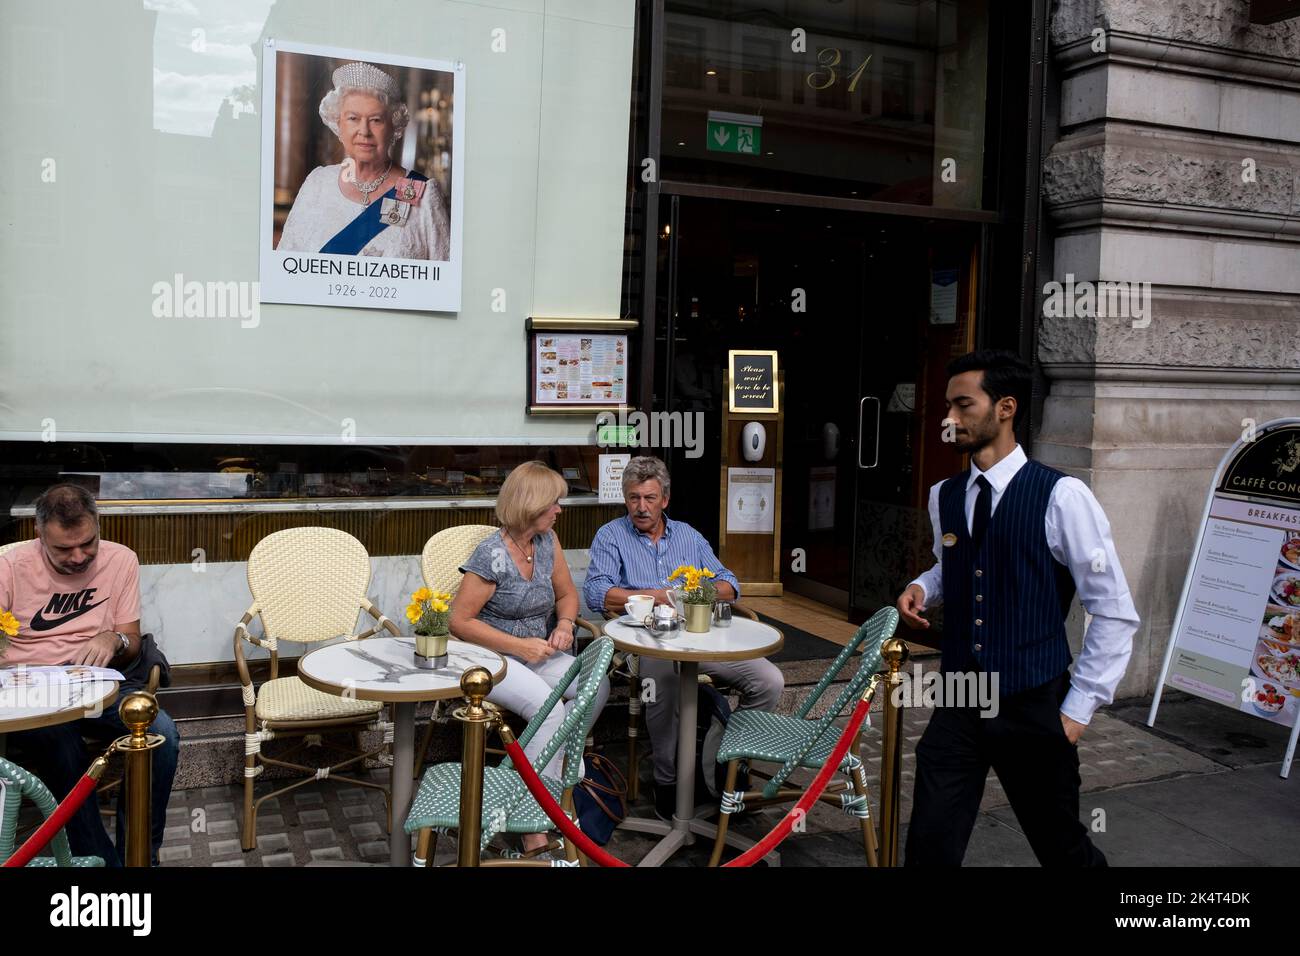 Imagen de la Reina en la ventana del Cafe Concerto mientras los clientes disfrutan de un café en el exterior tras la muerte de la Reina Isabel II, dejada como señal de respeto el 12th de septiembre de 2022 en Londres, Reino Unido. El rostro de la ahora difunta Reina será una imagen permanente durante los siglos venideros. Foto de stock